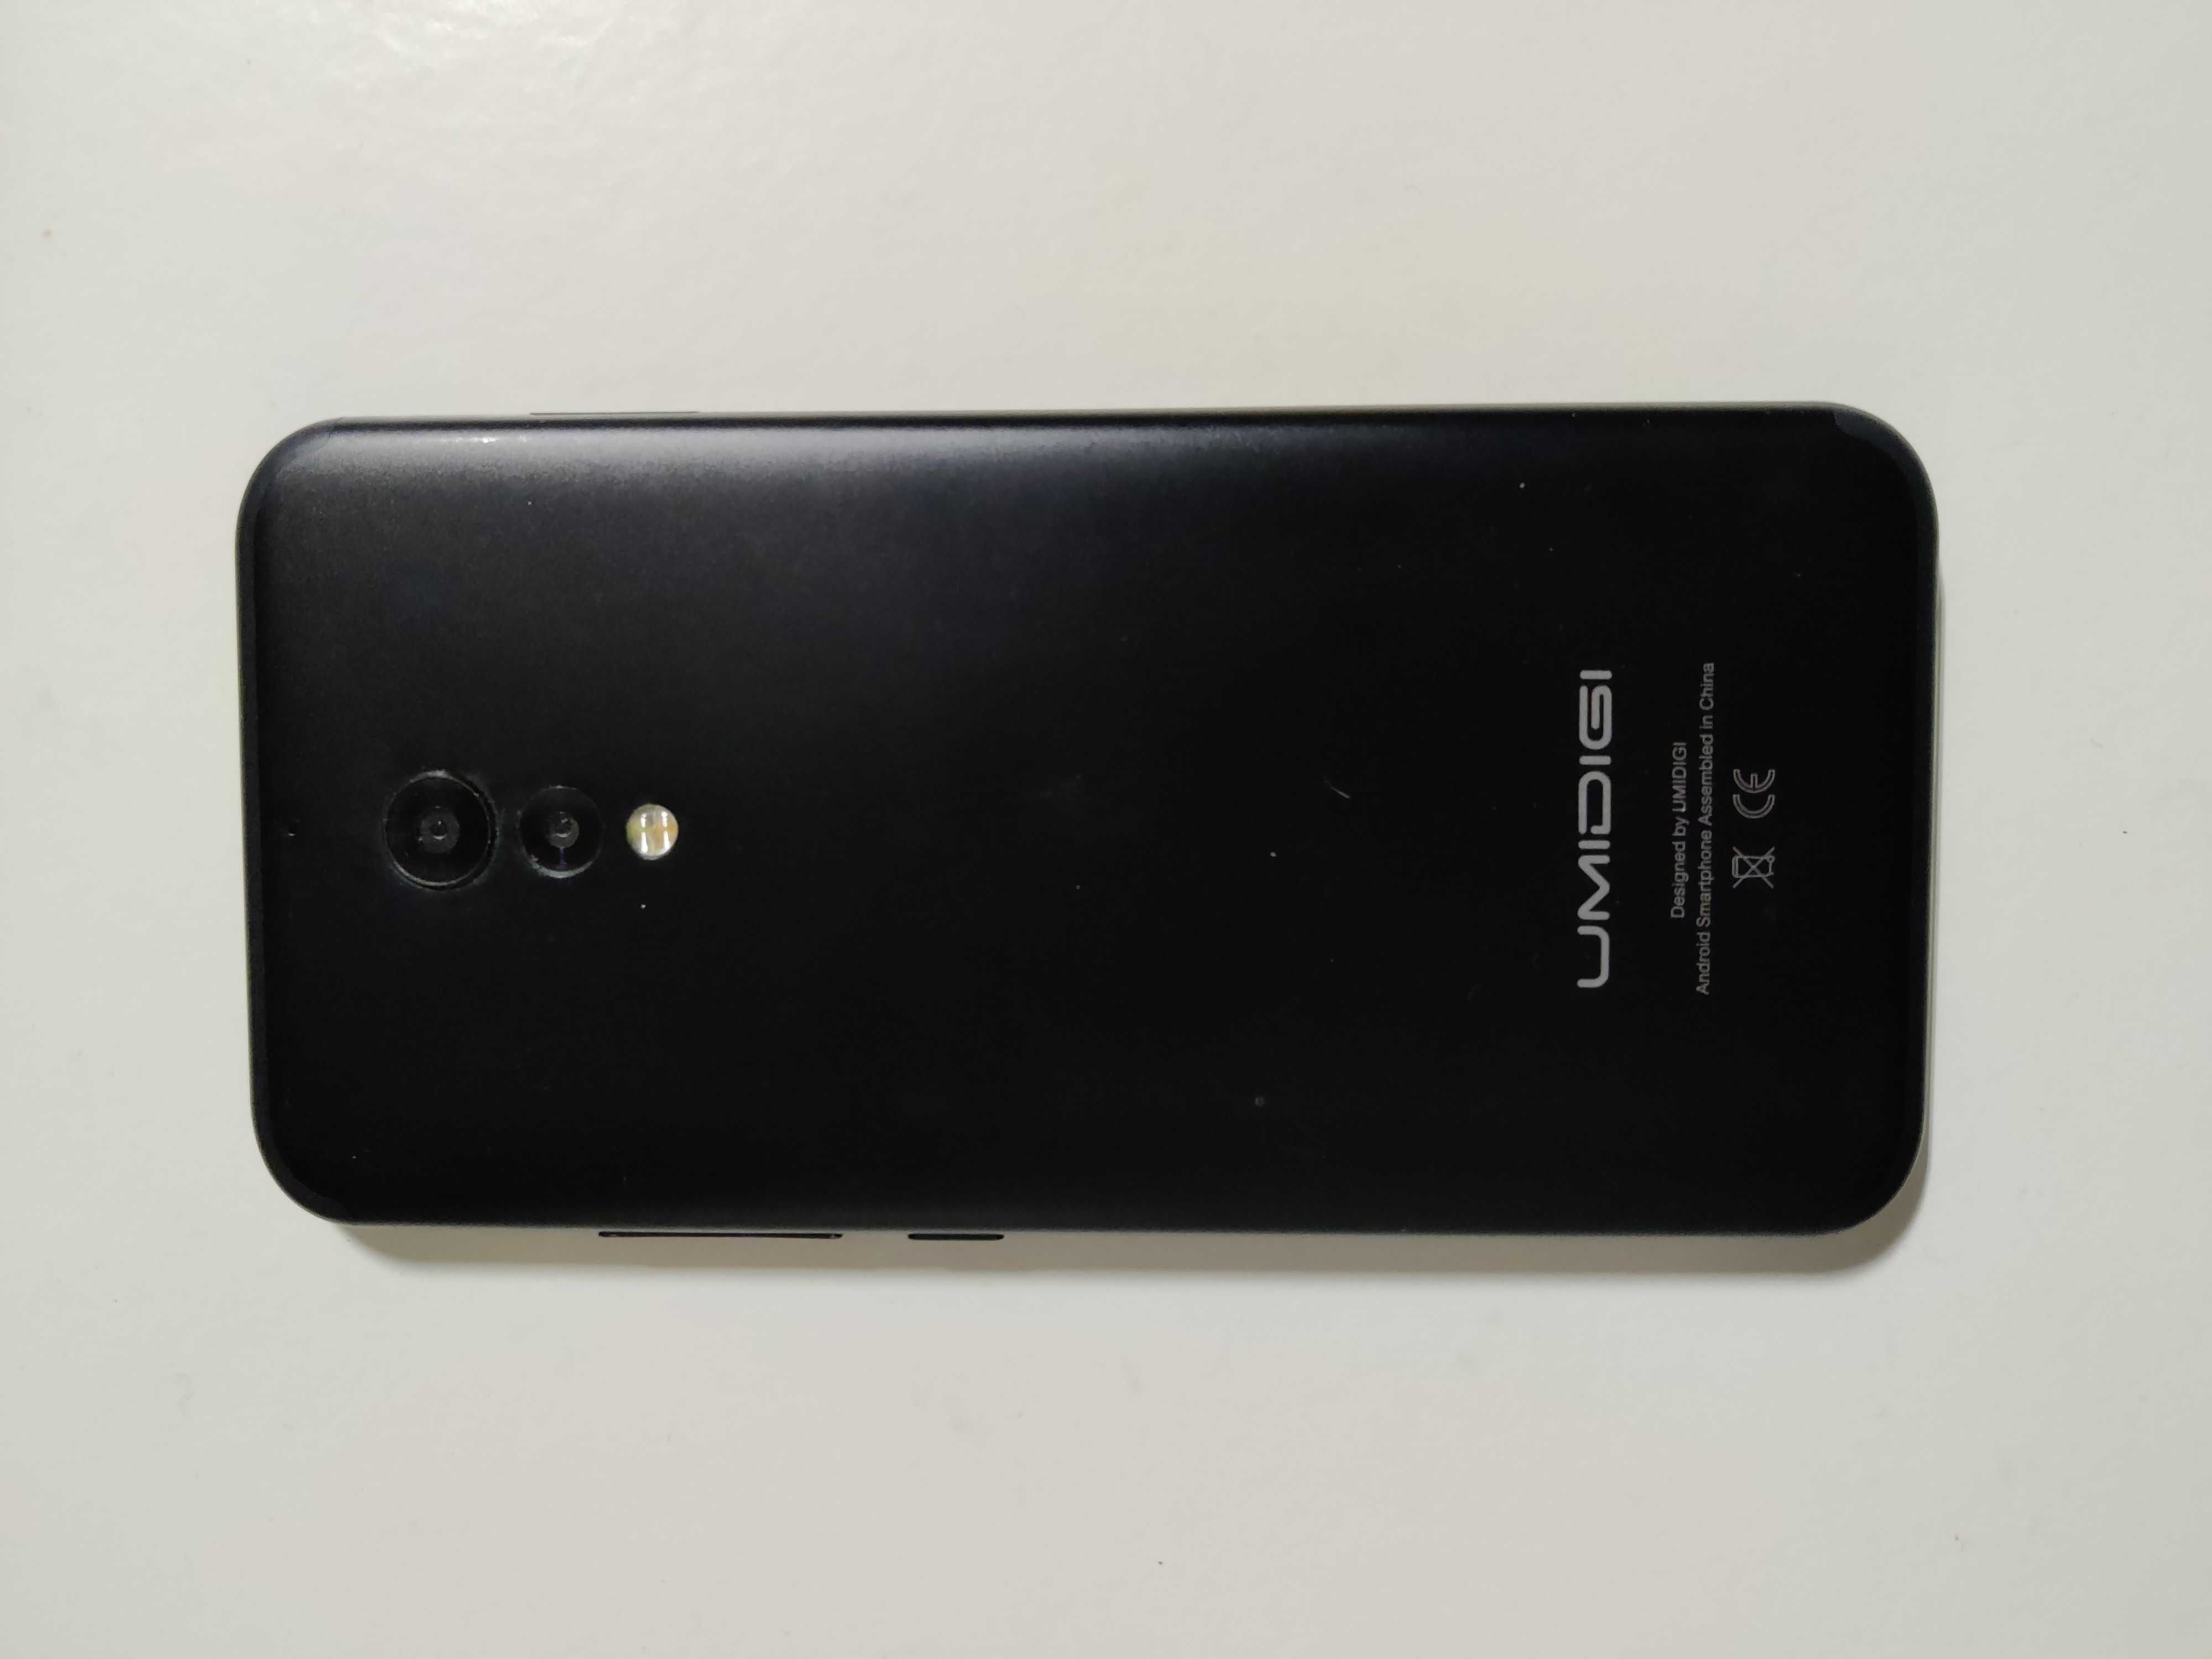 Smartphone Umidigi S